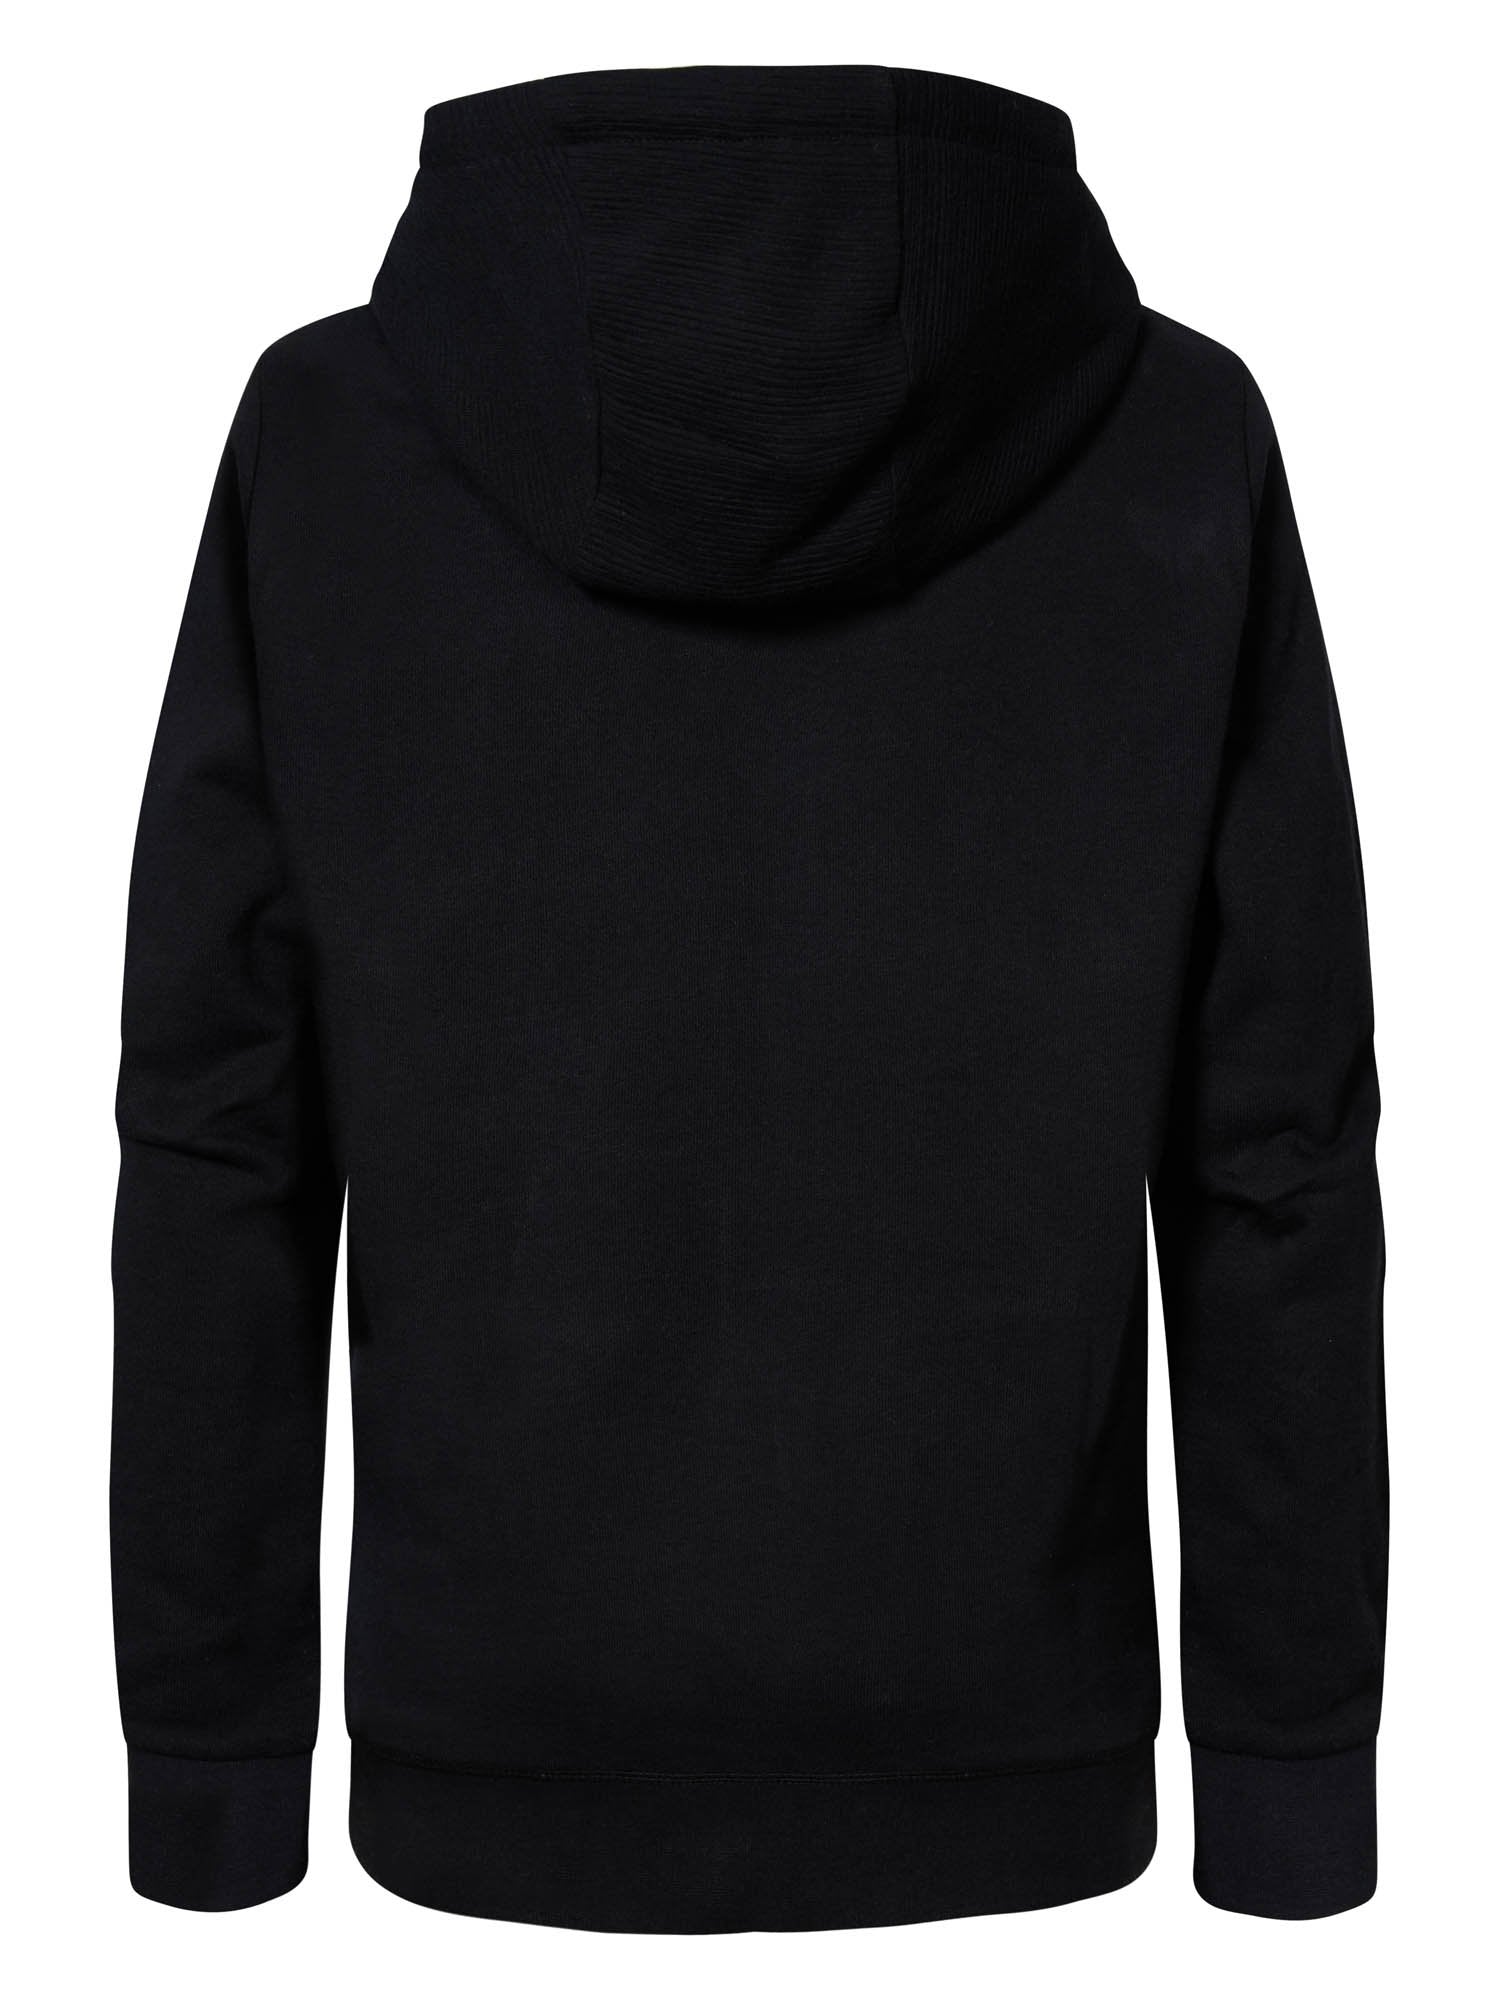 Jongens Hooded Sweater with Text in Hood van Petrol in de kleur Black in maat 164.